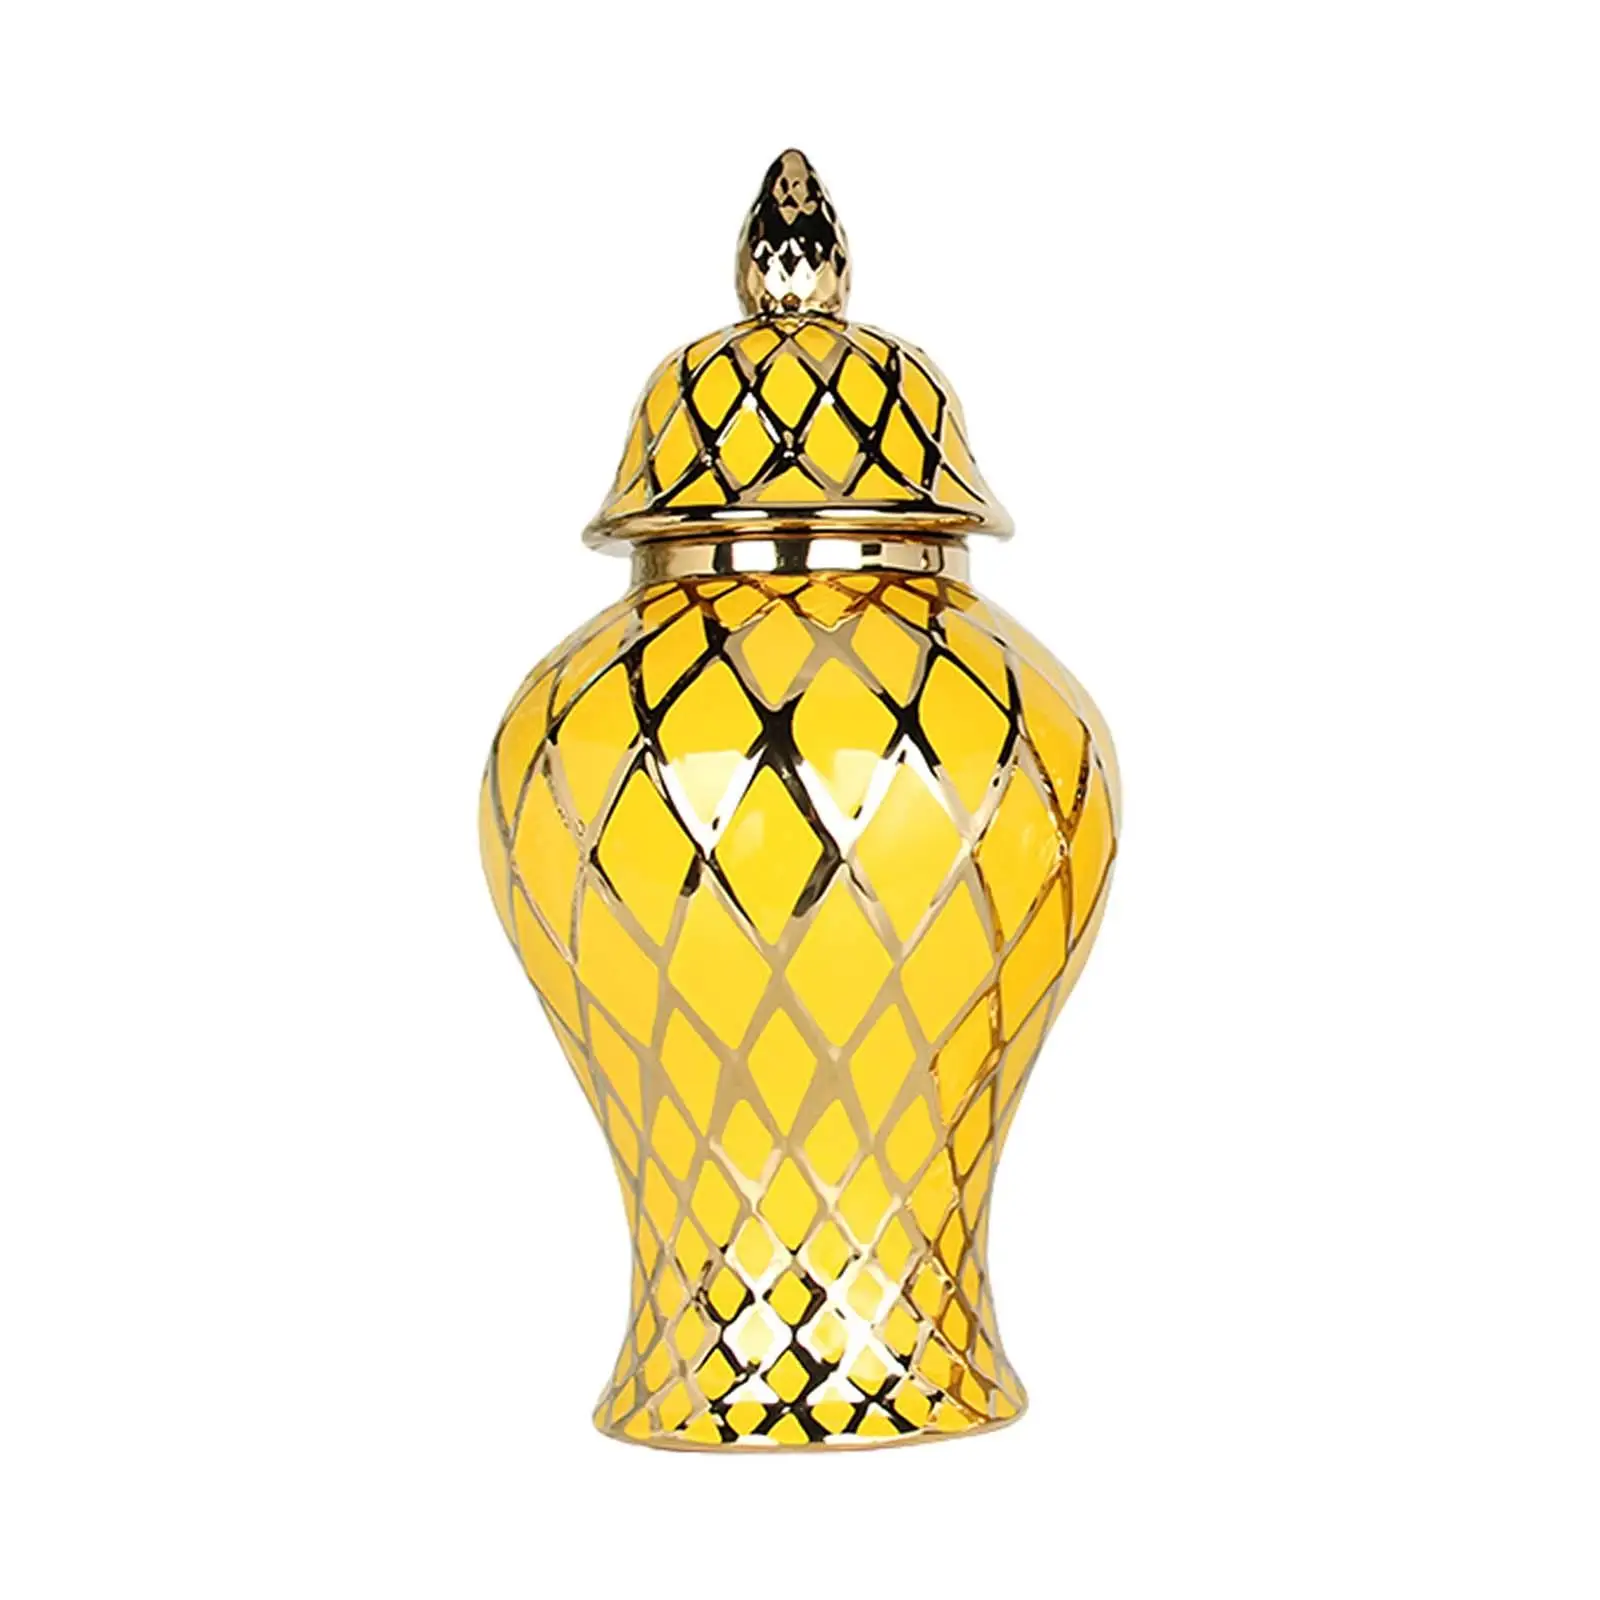 Ceramic Vase Chinese Handicraft Ornaments with Lid Porcelain Ginger Jar for Storage Tank Arrangement Weddings Office Livingroom